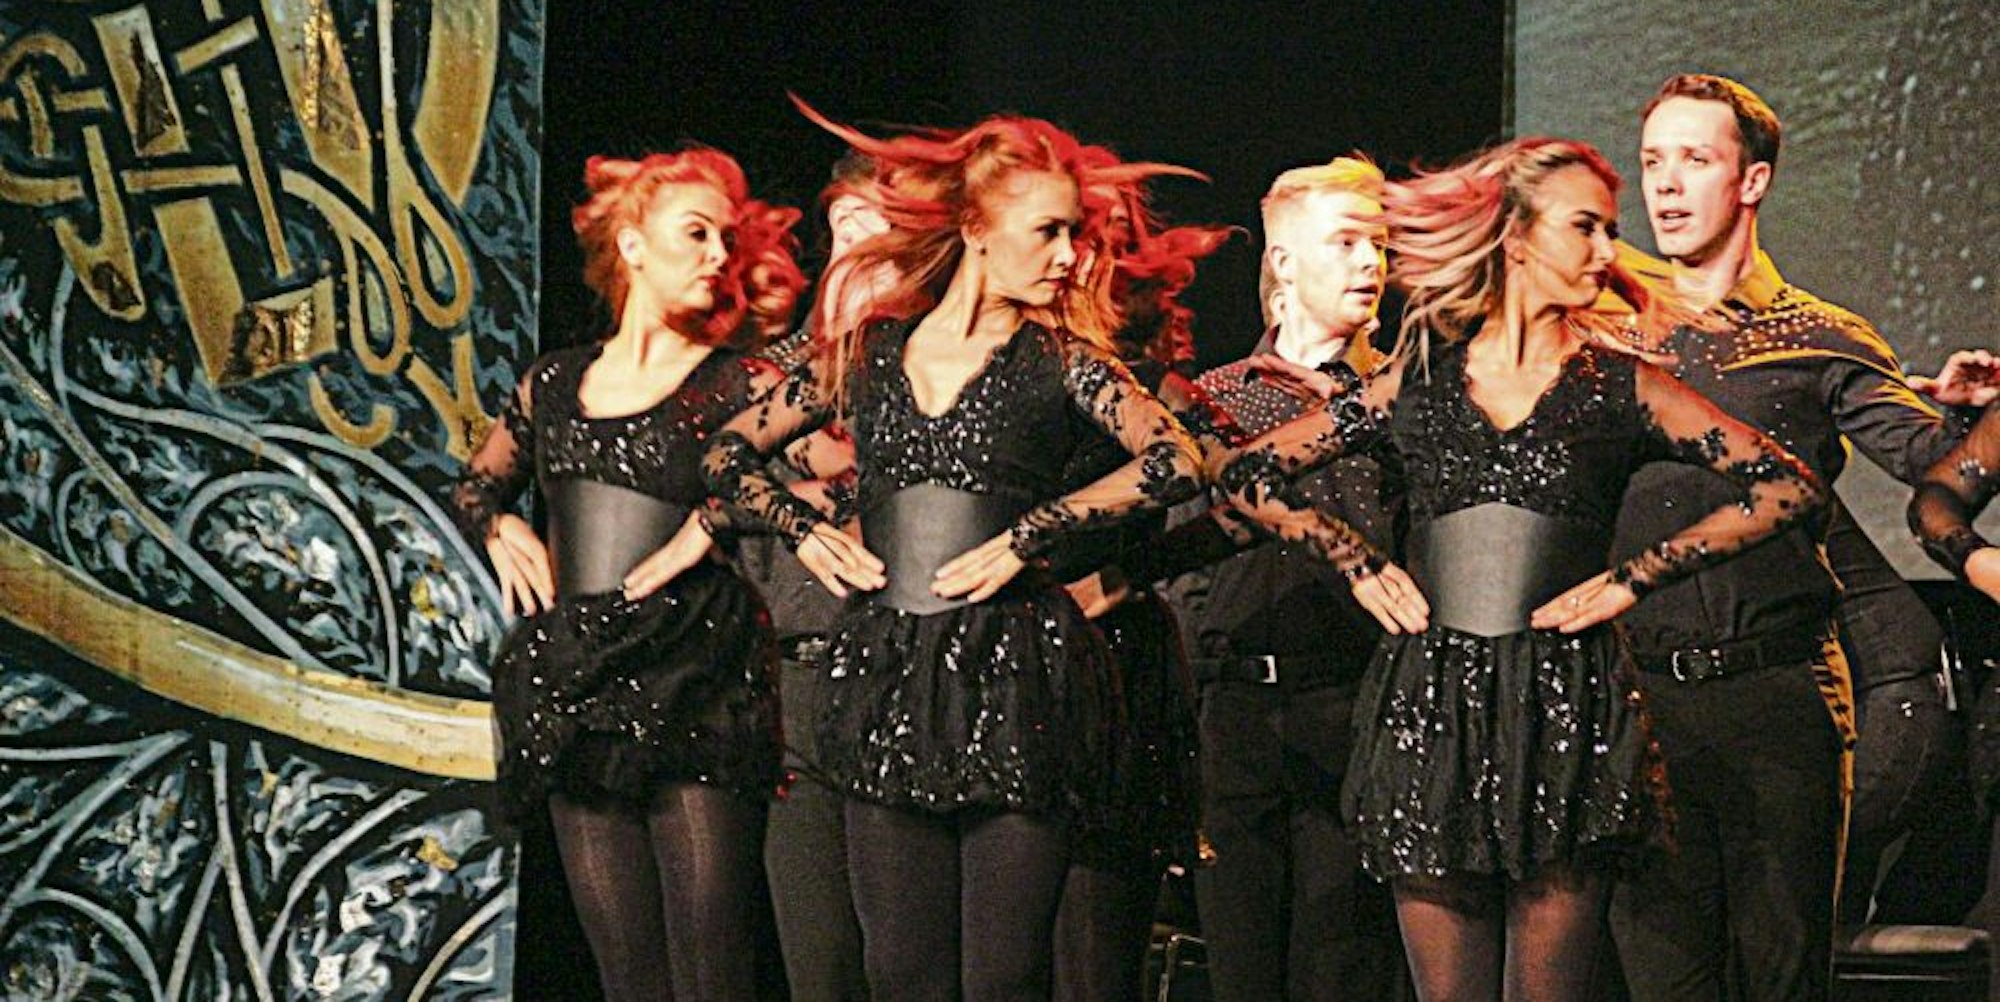 Eine furiose Show bot die National Dance Company of Ireland am Silvesterabend in der Troisdorfer Stadthalle.